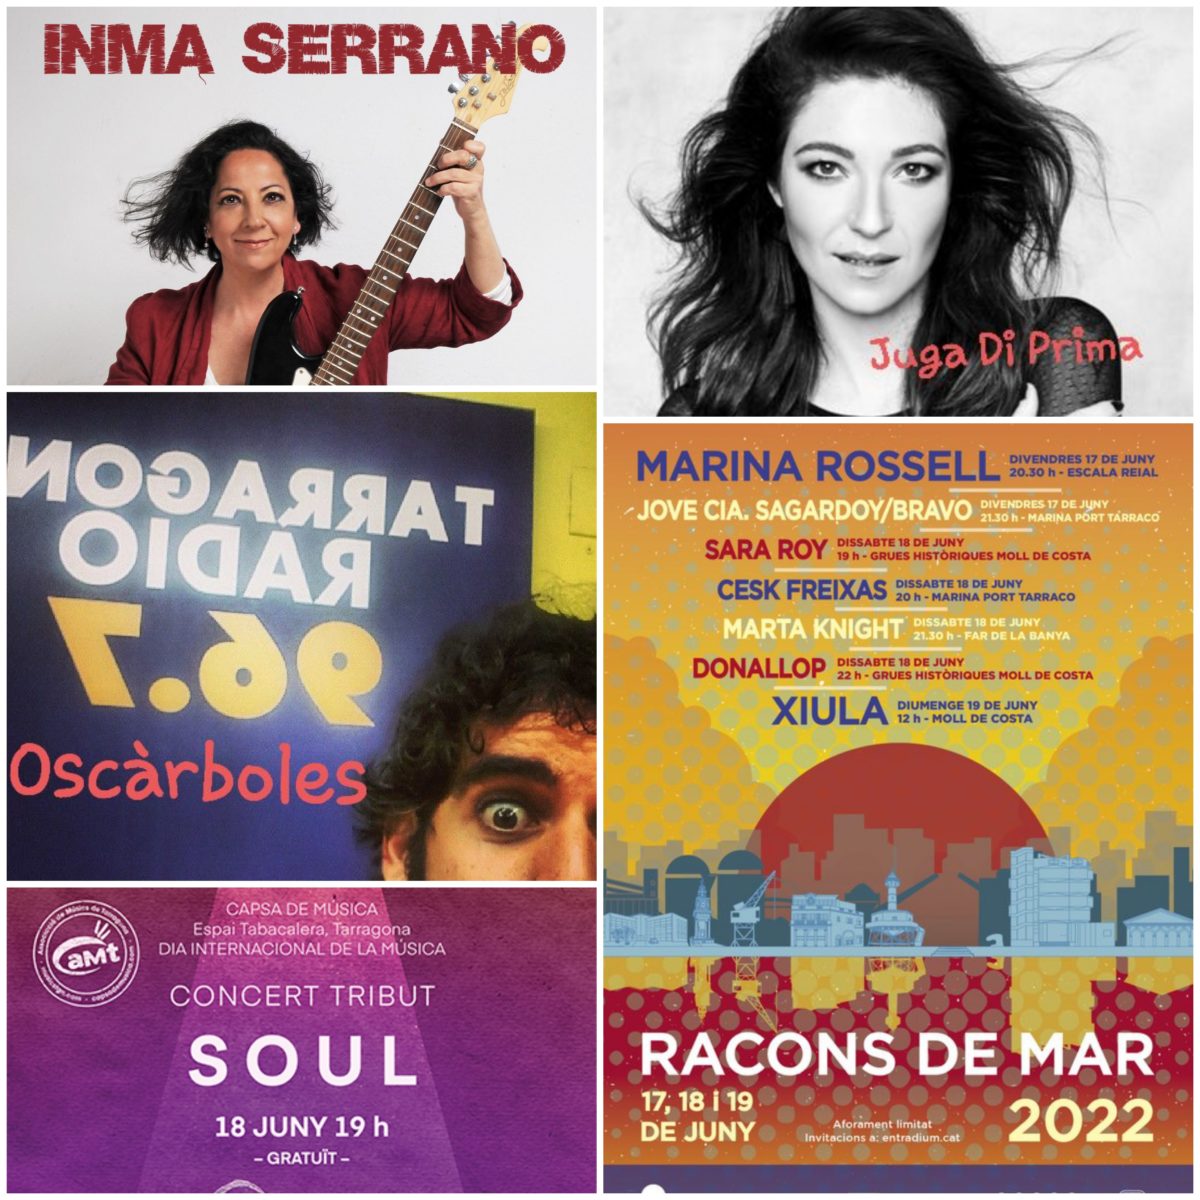 Aquesta setmana al programa ha estat protagonitzat pels concerts del Festivals Racons de Mar i l'Associació de Músics de Tarragona. També hem presentat els nous treballs de les cantautores Inma Serrano i Juga di Prima.